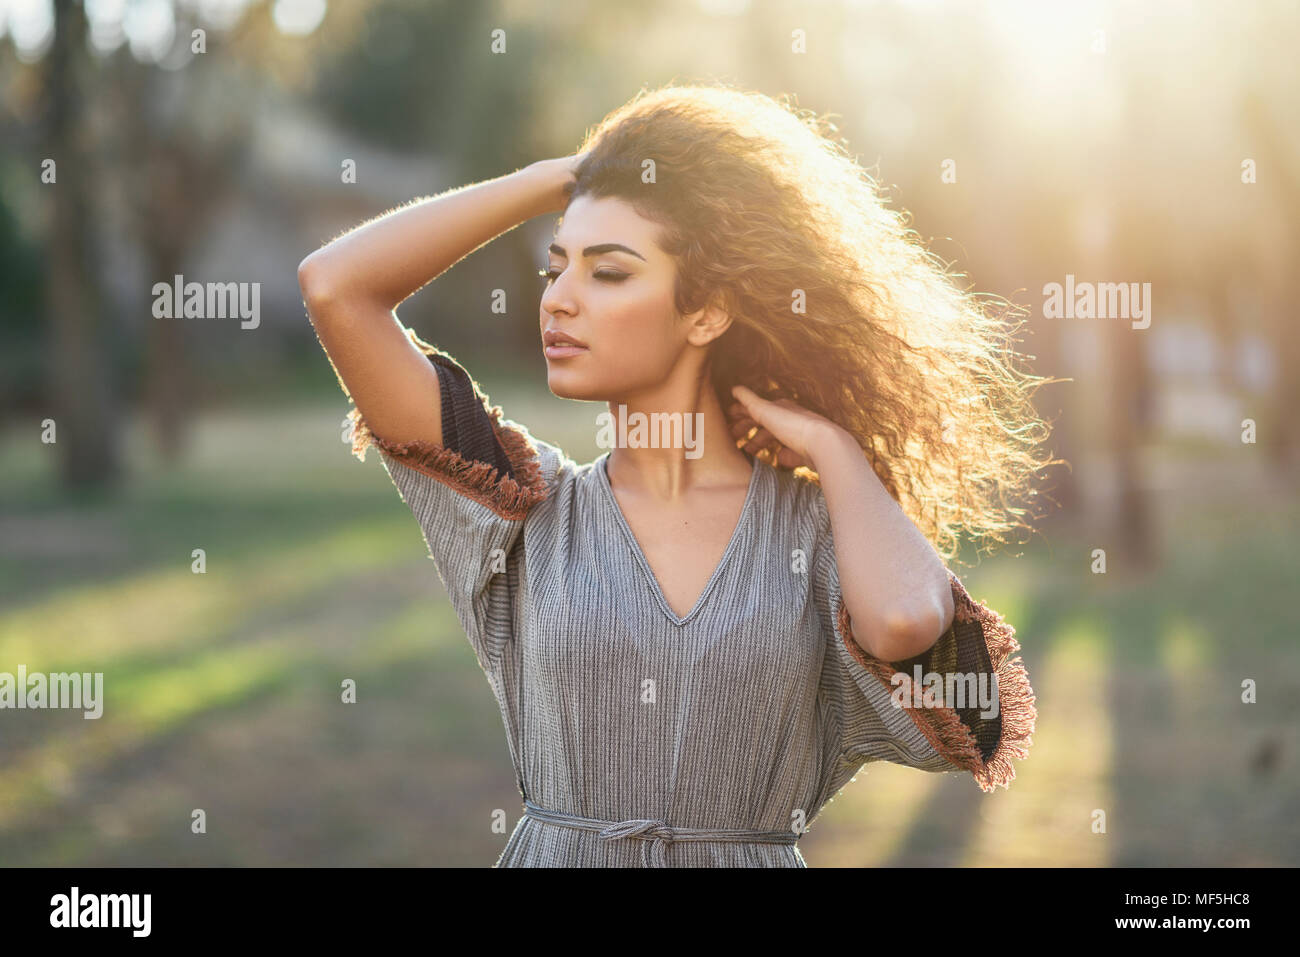 Spanien, Andalusien, Granada. Glückliche junge Frau mit Curly Frisur in einem städtischen Park mit geschlossenen Augen. Lifestyle Konzept. Stockfoto